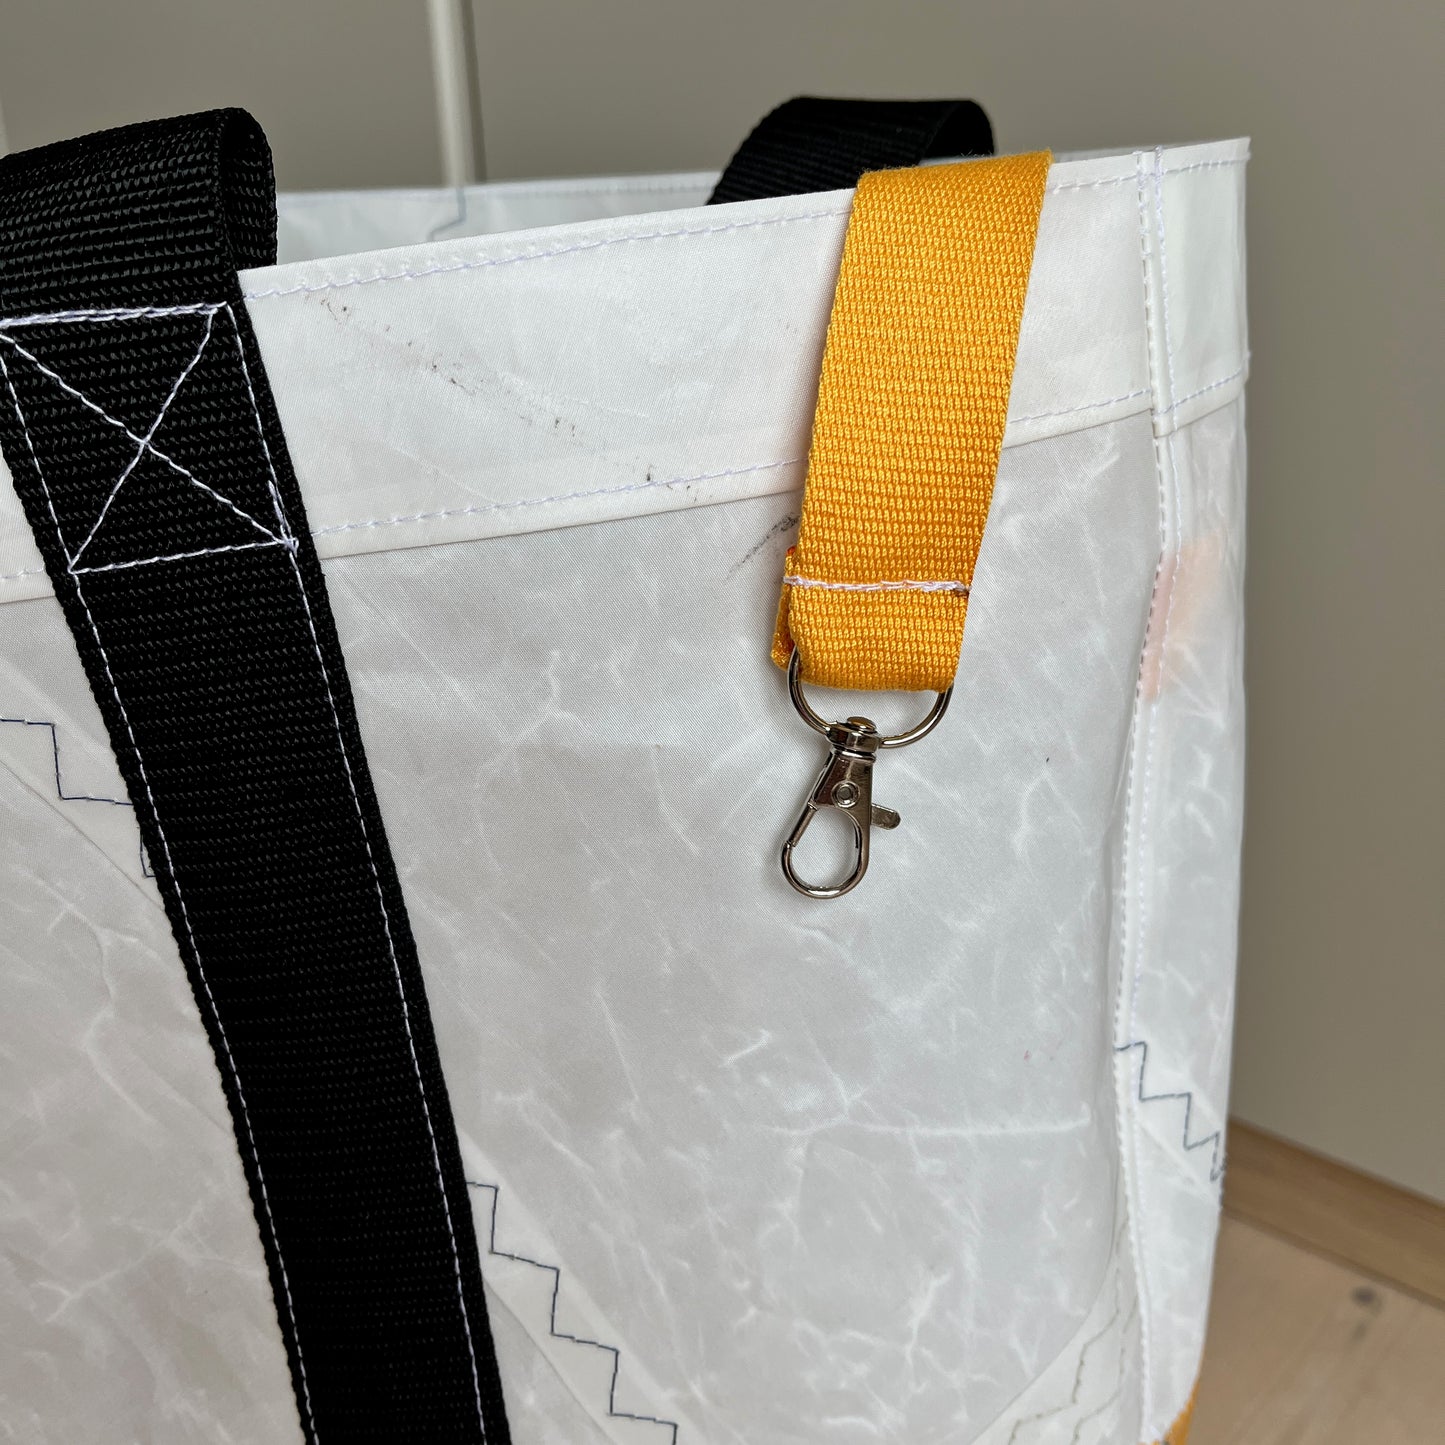 Stor bag, shopper, hvitt seil med gul bunn